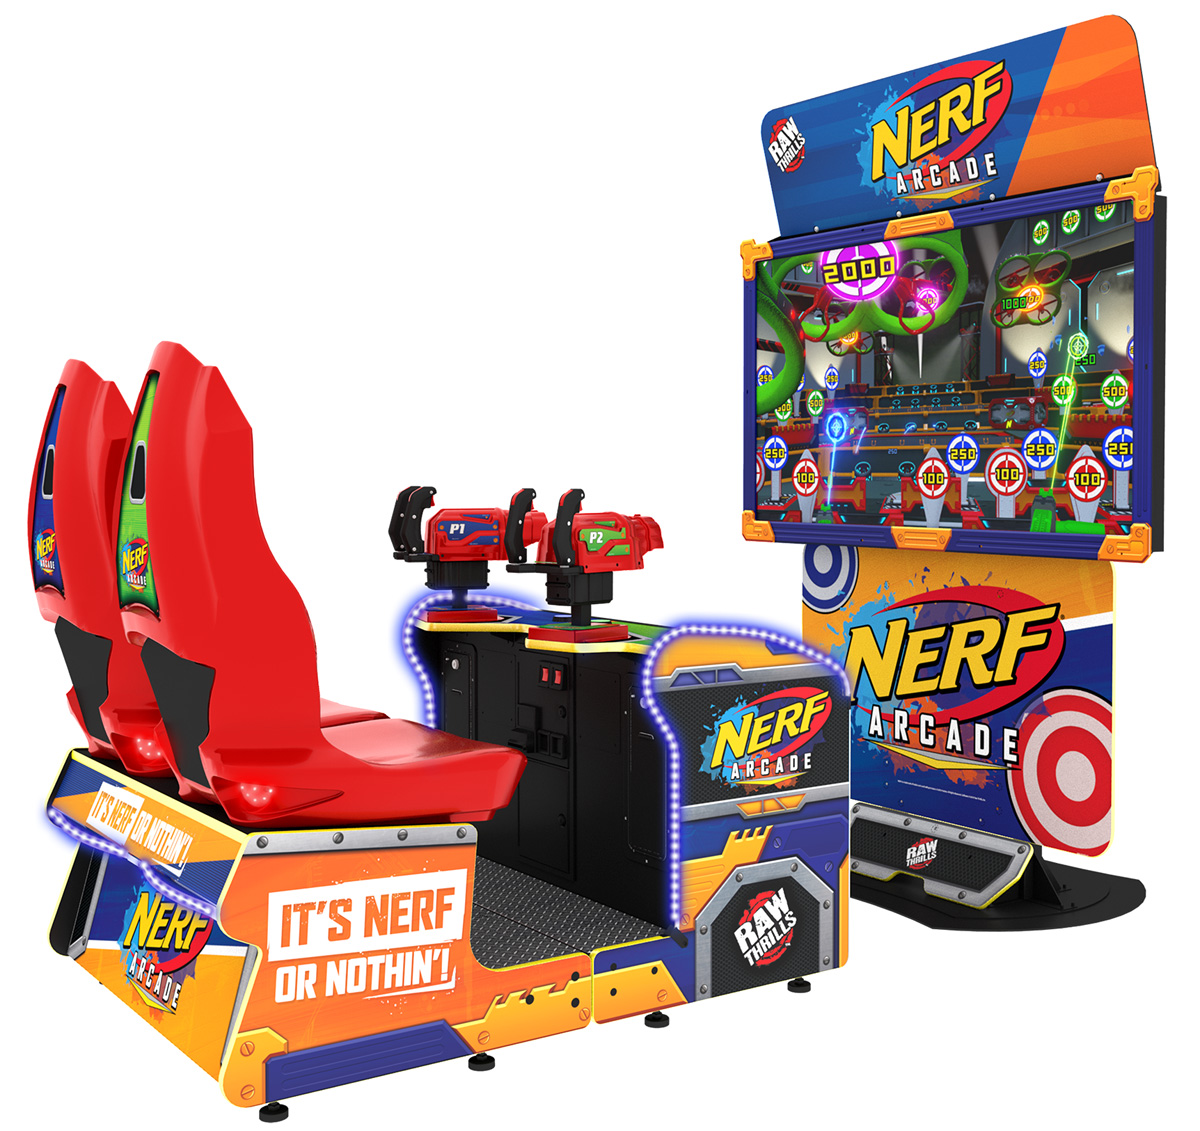 Nerf Arcade Game Fun!